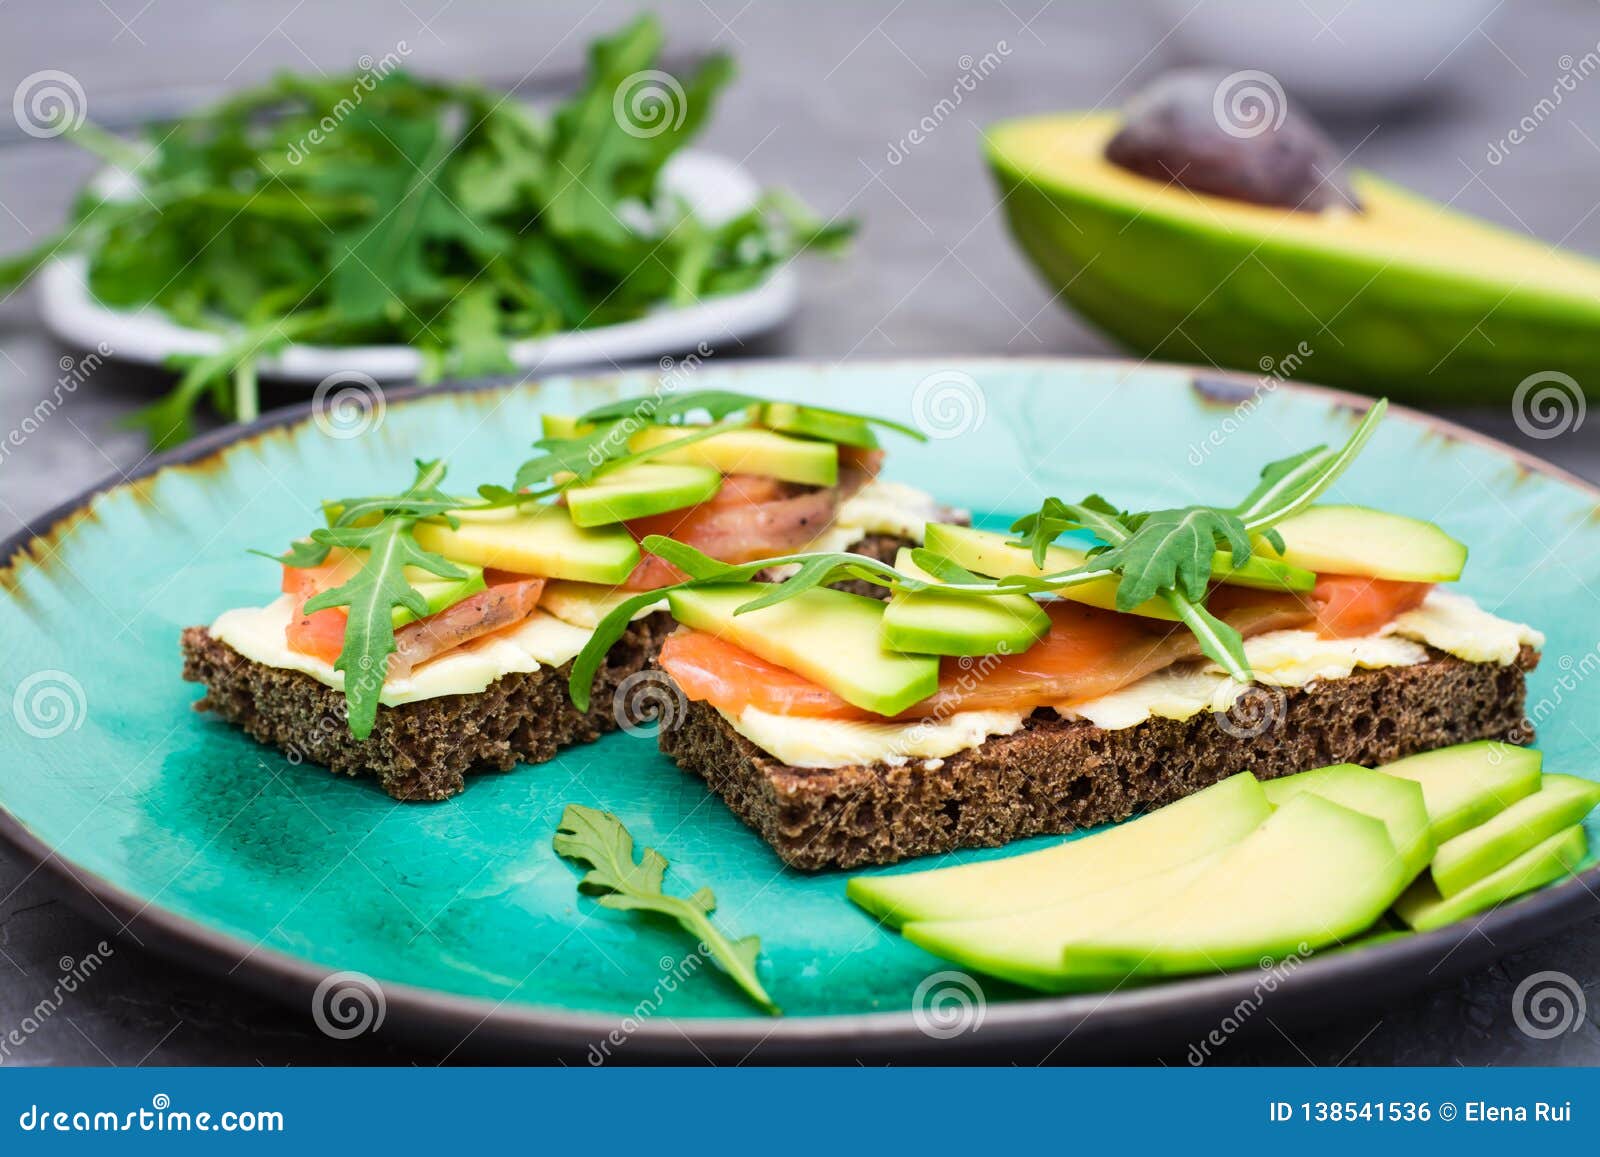 Бутерброд с авокадо и рукколой